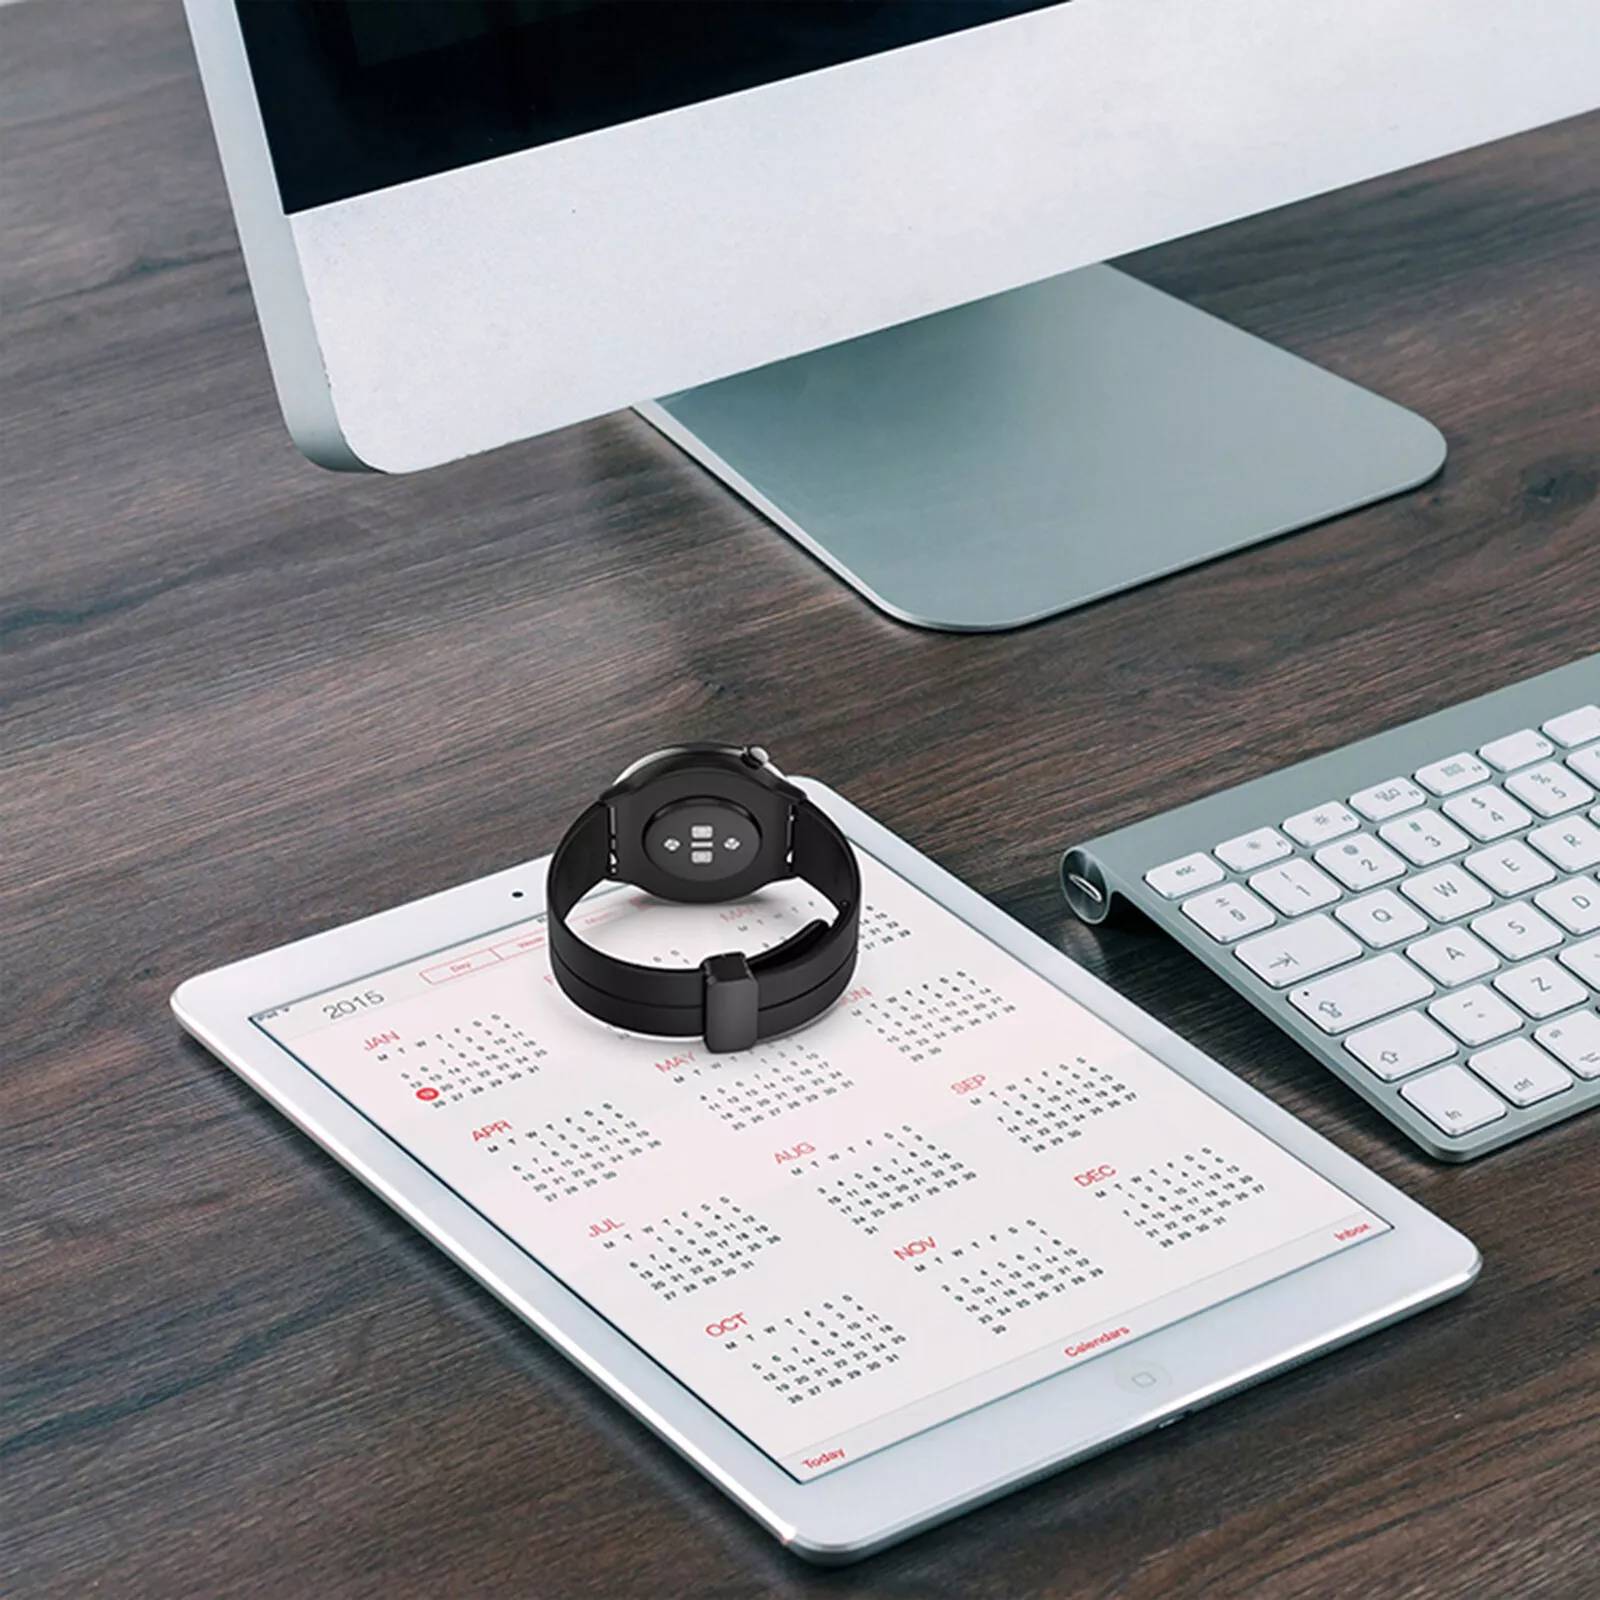 بند راینو مدل Magnetic D-Buckle مناسب برای ساعت هوشمند سامسونگ Galaxy Watch Active / Active 2